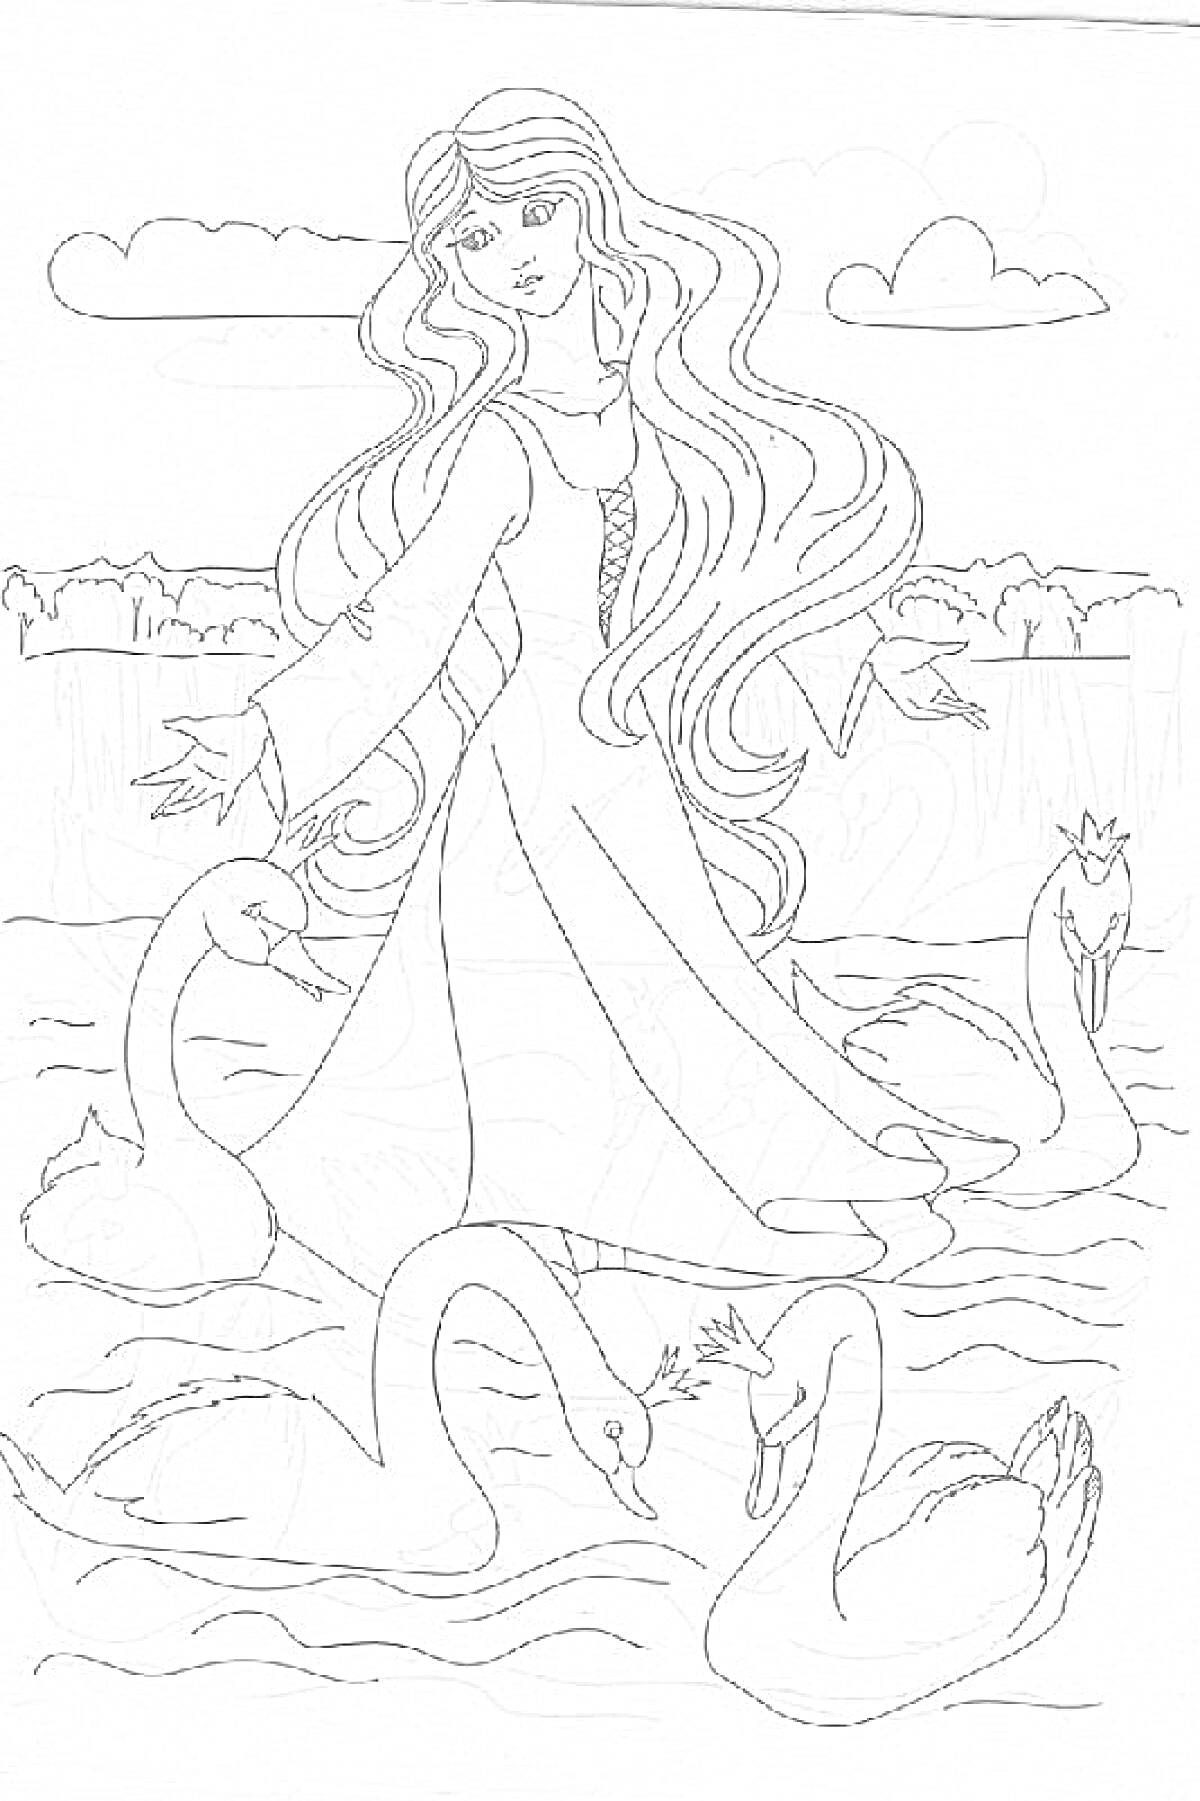 Девушка с длинными волосами, стоящая в воде среди диких лебедей, с деревьями и облаками на заднем плане